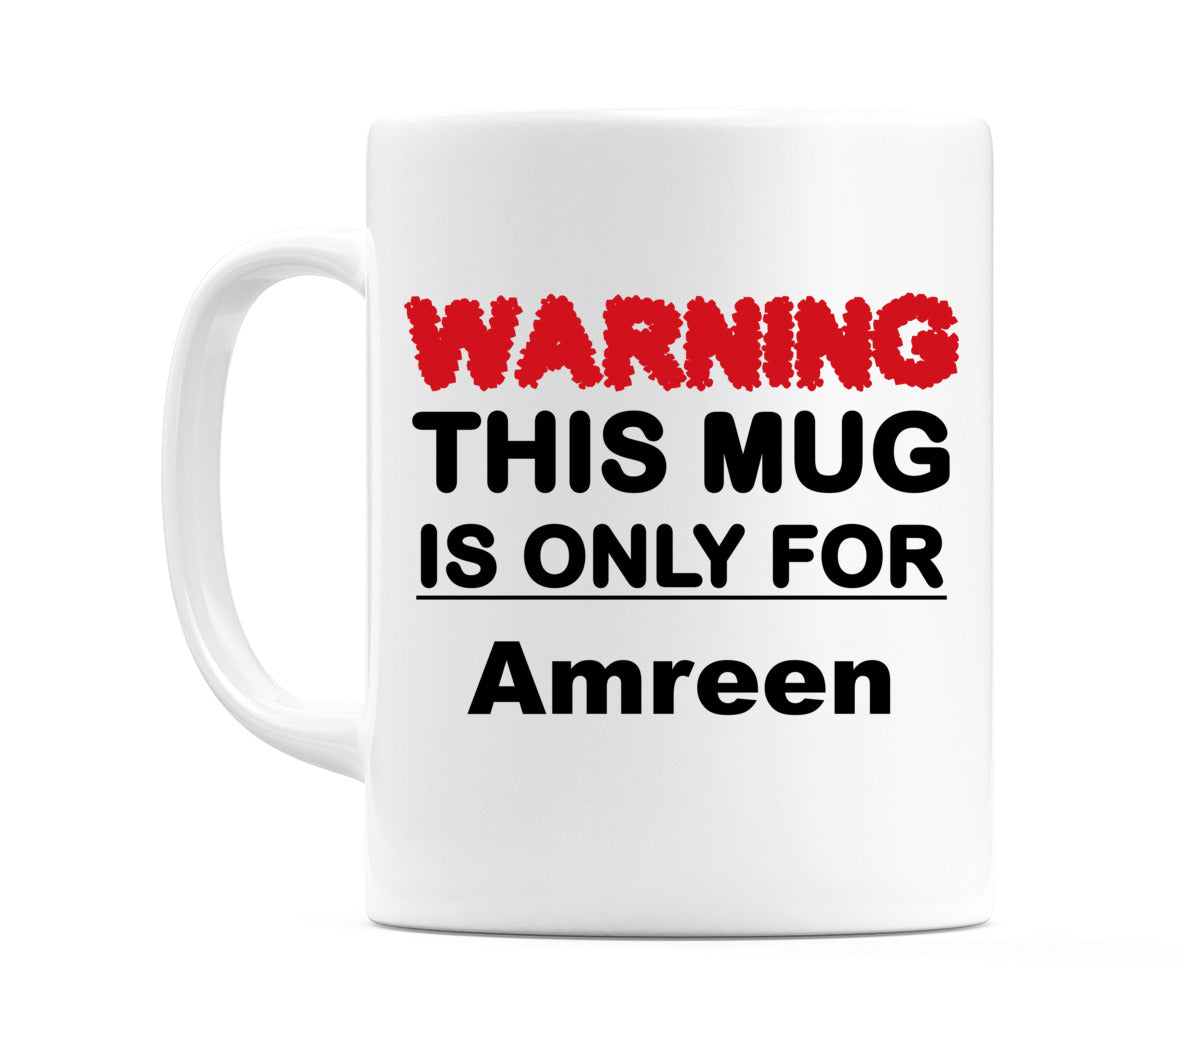 Warning This Mug is ONLY for Amreen Mug